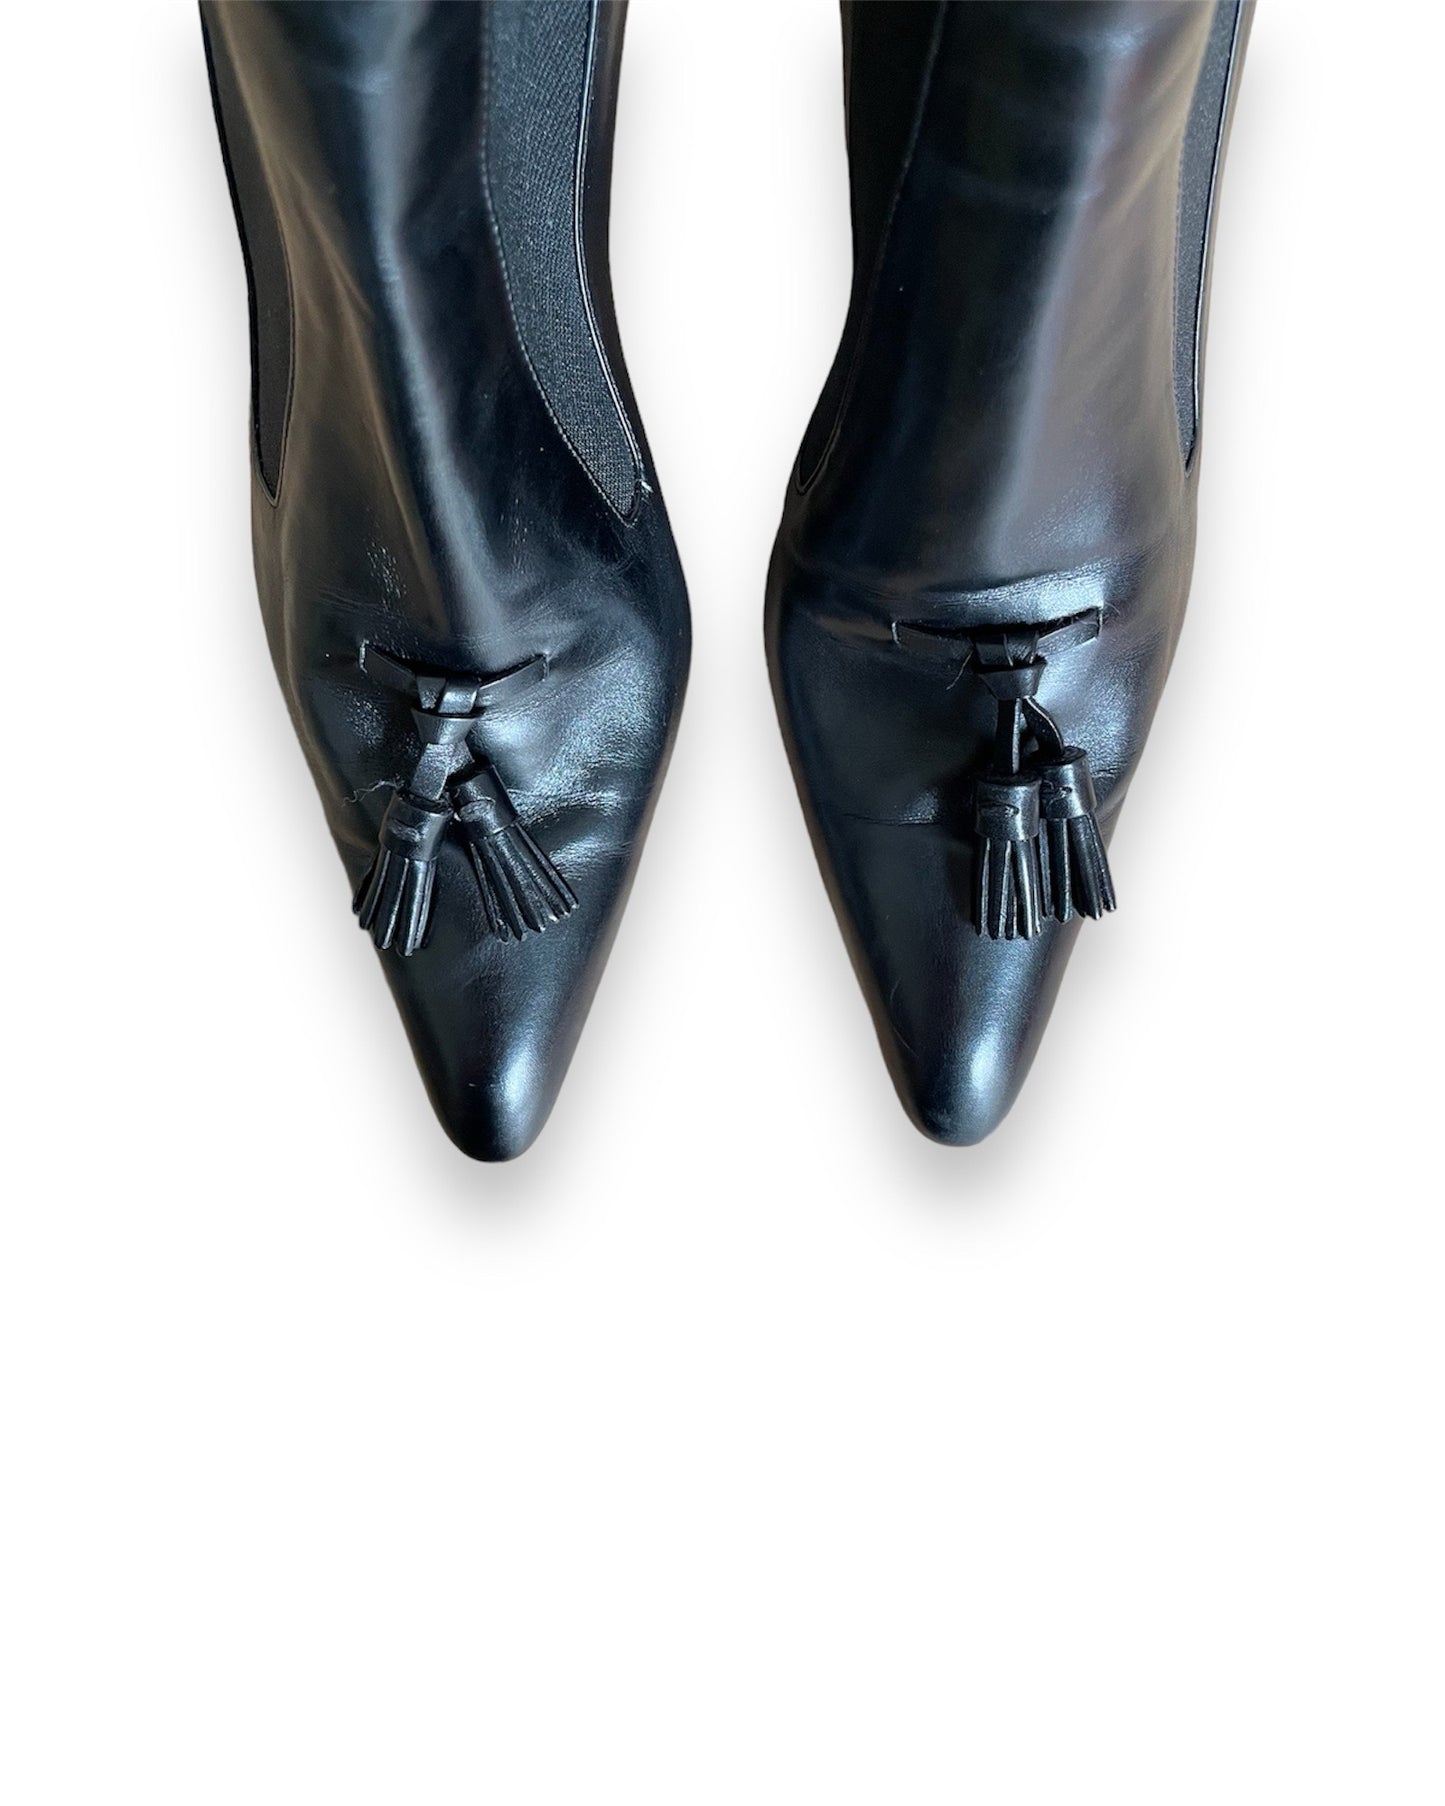 Bottines Yves Saint Laurent en cuir noir vintage.